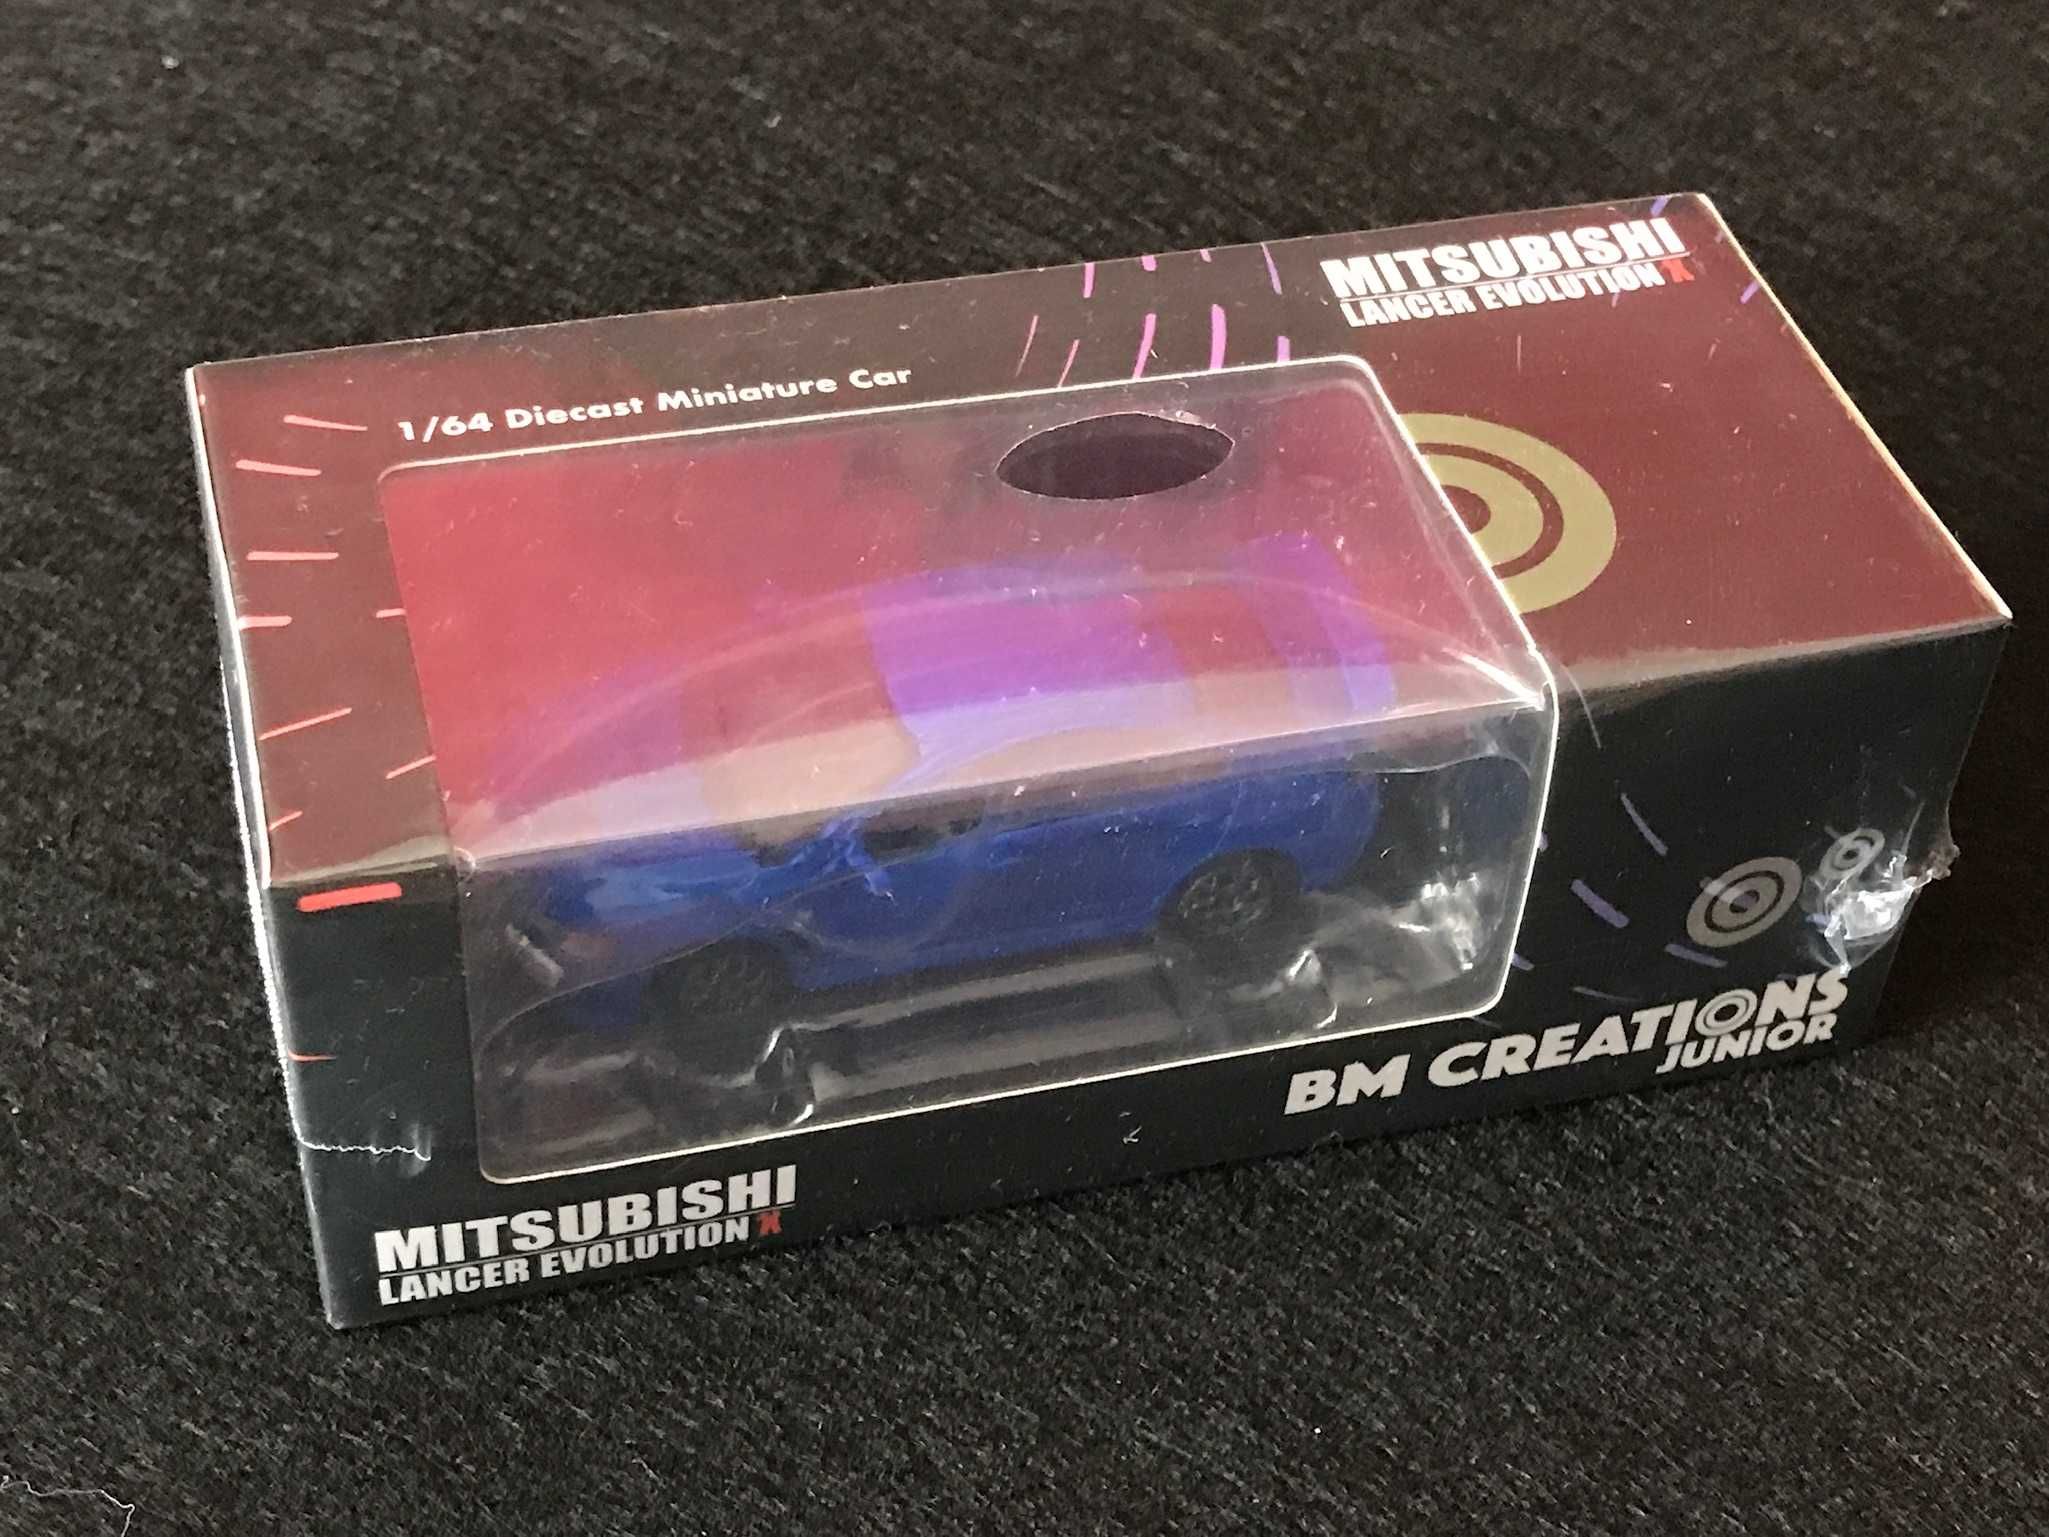 BM Creation - Subaru impreza - Mitsubishi Evolution - 1/64